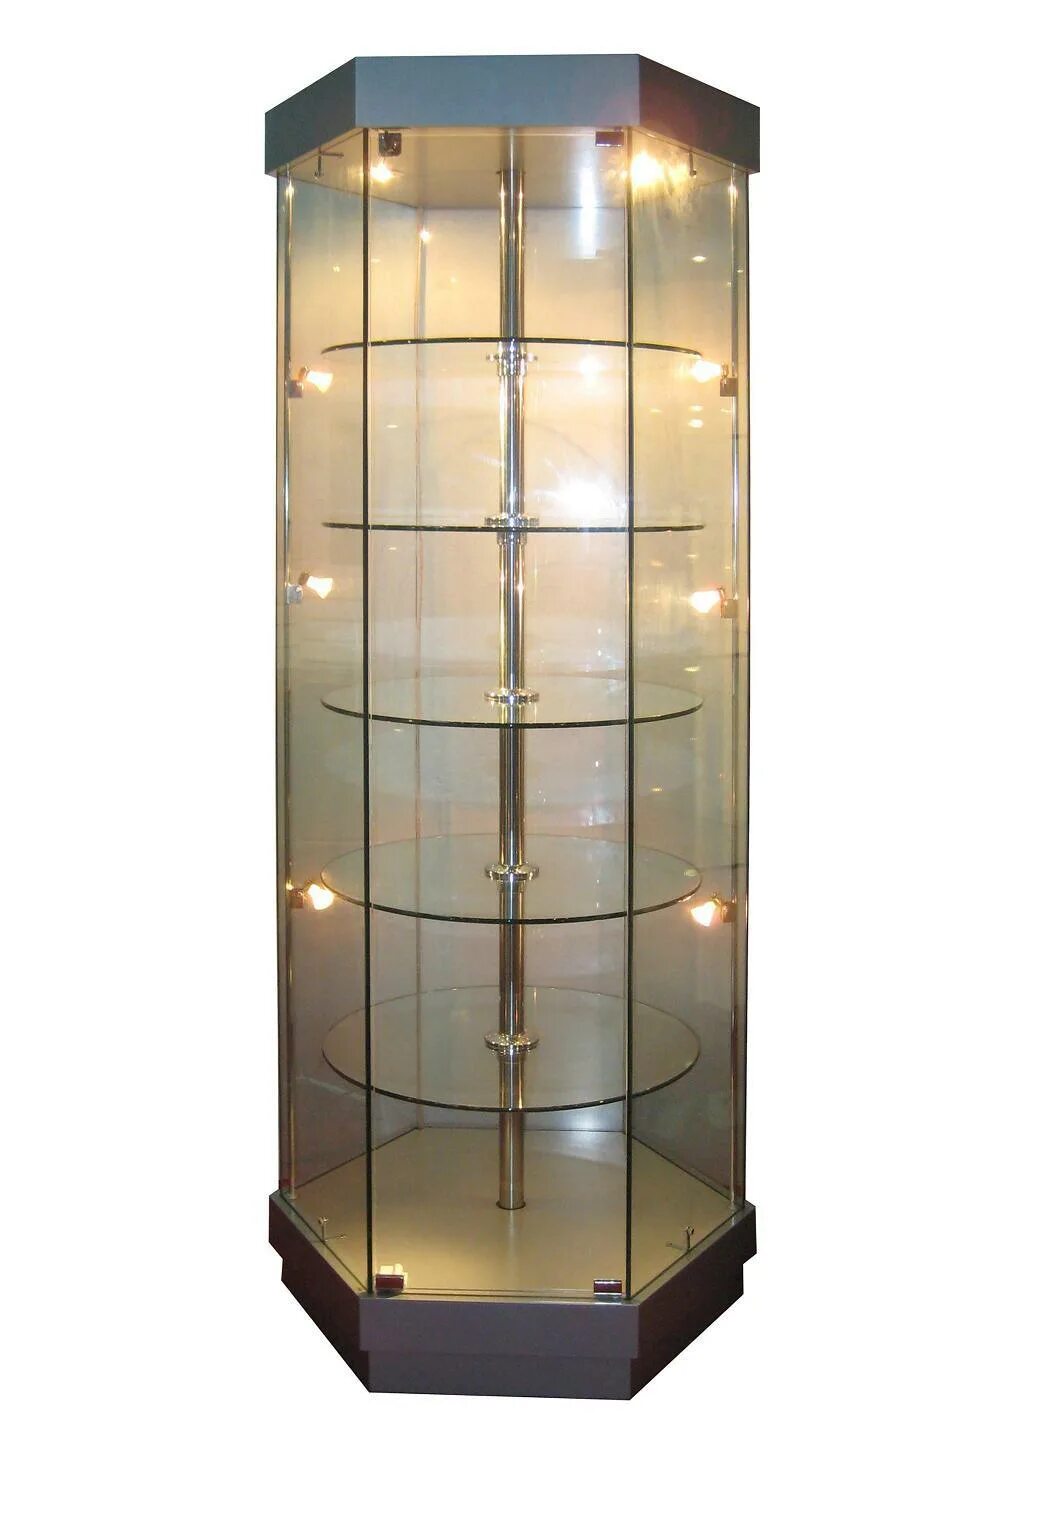 Витрина Glass Showcase. Витрина Glass Showcase h 1800. Вращающаяся витрина с подсветкой. Стеклянный шкаф. Вращающиеся витрины